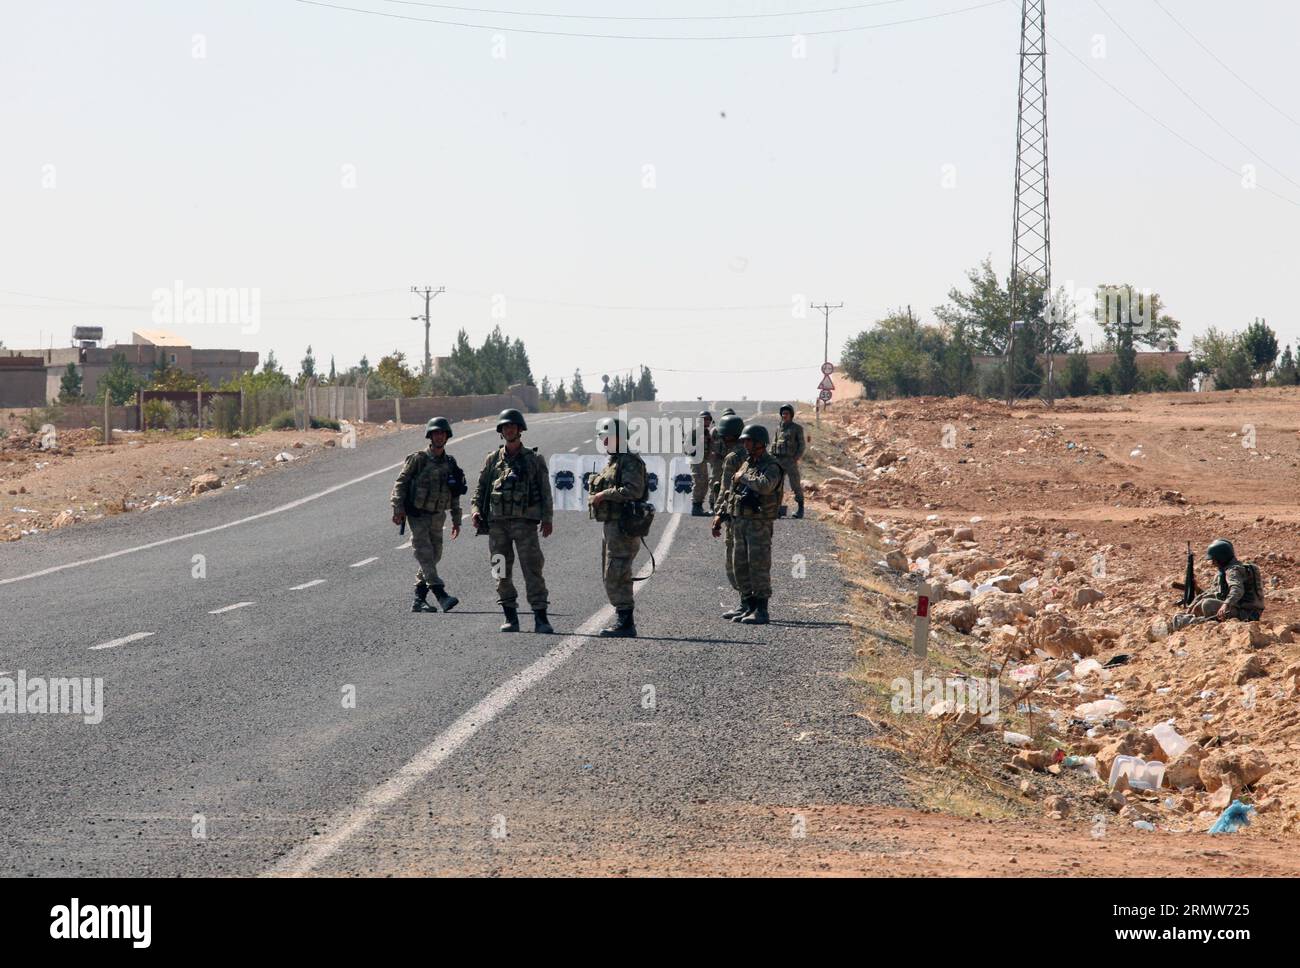 (141008) -- ANKARA, 8 ottobre 2014 -- i soldati turchi camminano sul lato turco del confine turco-siriano l'8 ottobre 2014. Le forze di sicurezza turche hanno adottato rigorose misure di sicurezza lungo il confine turco-siriano per impedire infiltrazioni dalla Siria nel territorio turco.) TURKEY-SANLIURFA-SECUTITY MEASURES-INTENSIFIED MertxMacit PUBLICATIONxNOTxINxCHN Ankara OCT 8 2014 soldati turchi camminano SUL lato turco del confine turco-siriano L'8 ottobre 2014 le forze di sicurezza turche hanno adottato rigorose misure di sicurezza lungo la linea di frontiera turco-siriana per impedire alla Siria di entrare Foto Stock